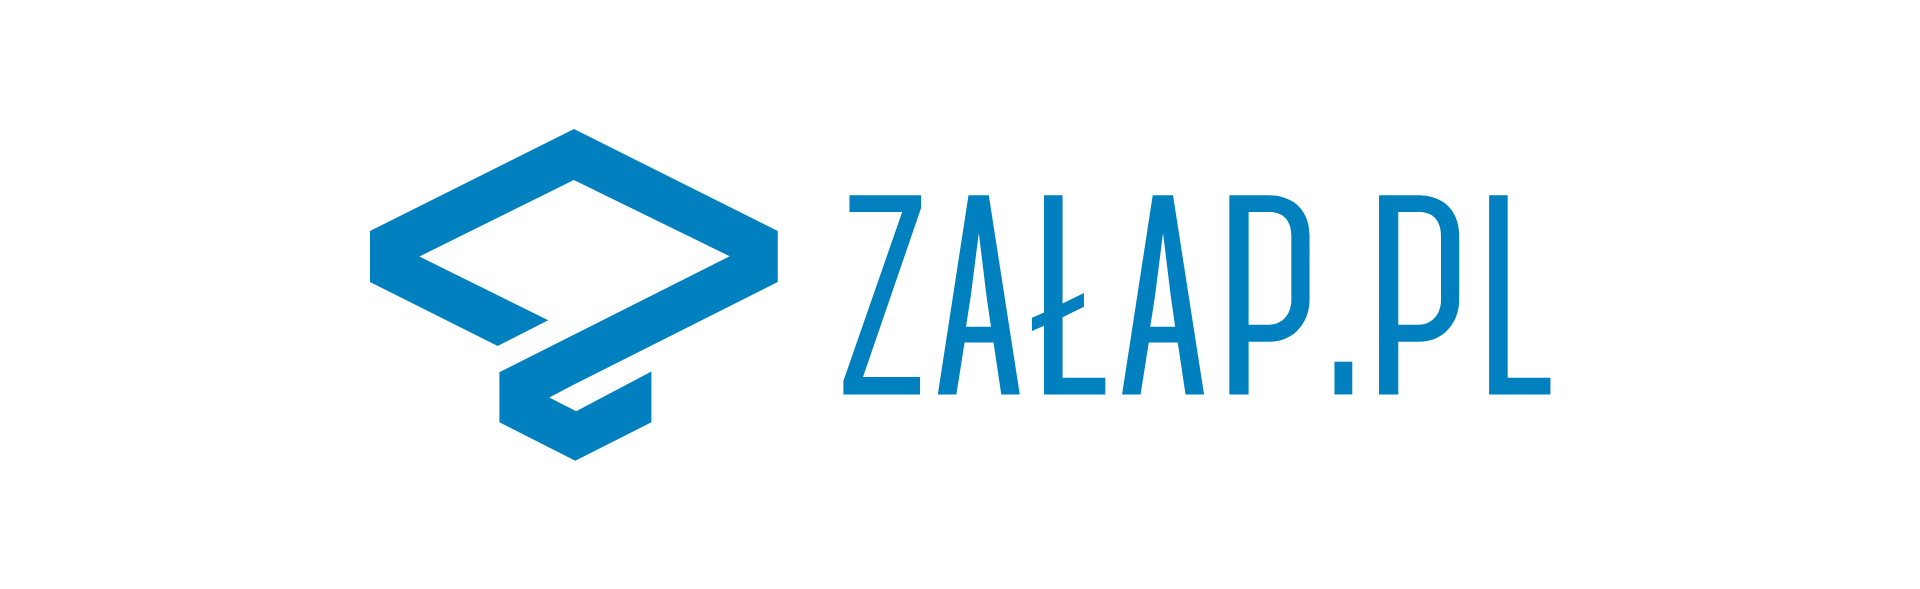 Załap.pl niebieskie logo